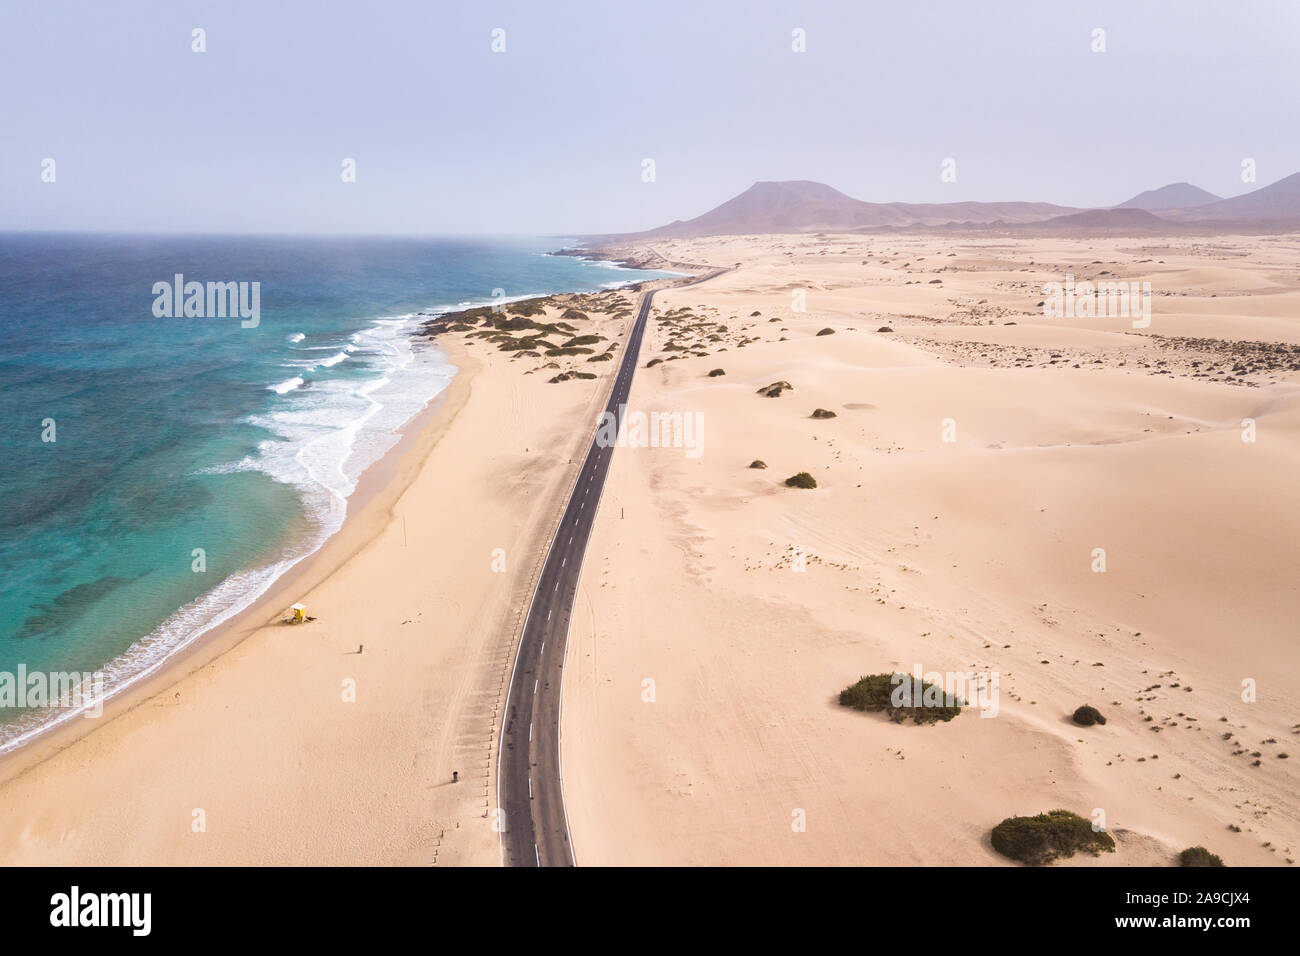 Vista aérea de playa con una carretera que bordea la costa del océano y dunas de arena en Fuerteventura, Islas Canarias, visto desde el drone, pintorescos paisajes costeros, verano Foto de stock